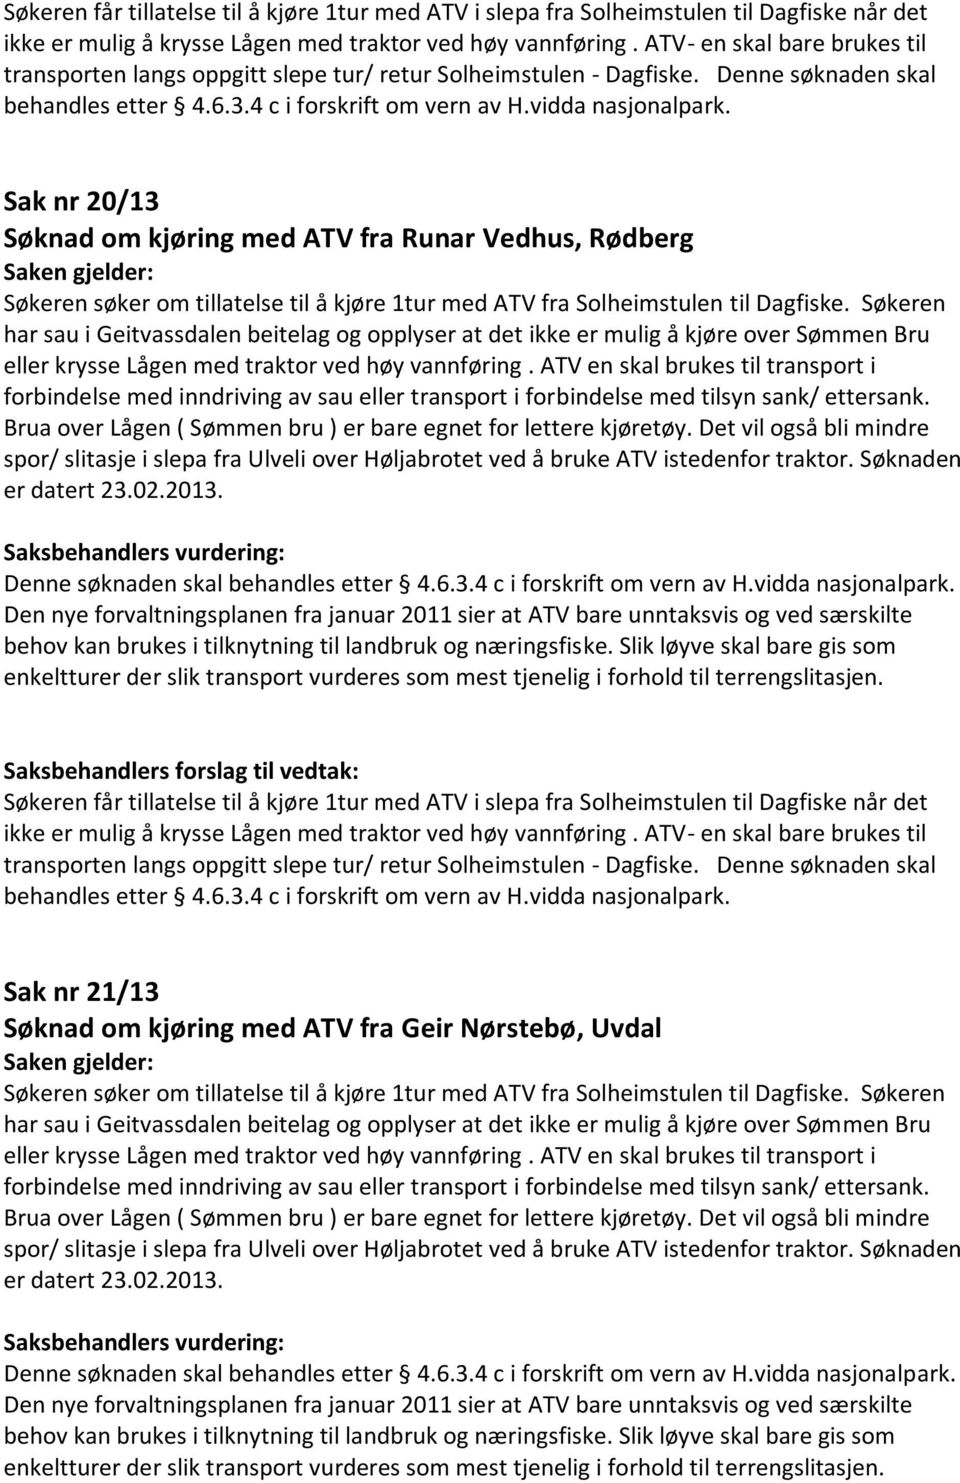 det Sak nr 21/13 Søknad om kjøring med ATV fra Geir Nørstebø, Uvdal er datert 23.02.2013.